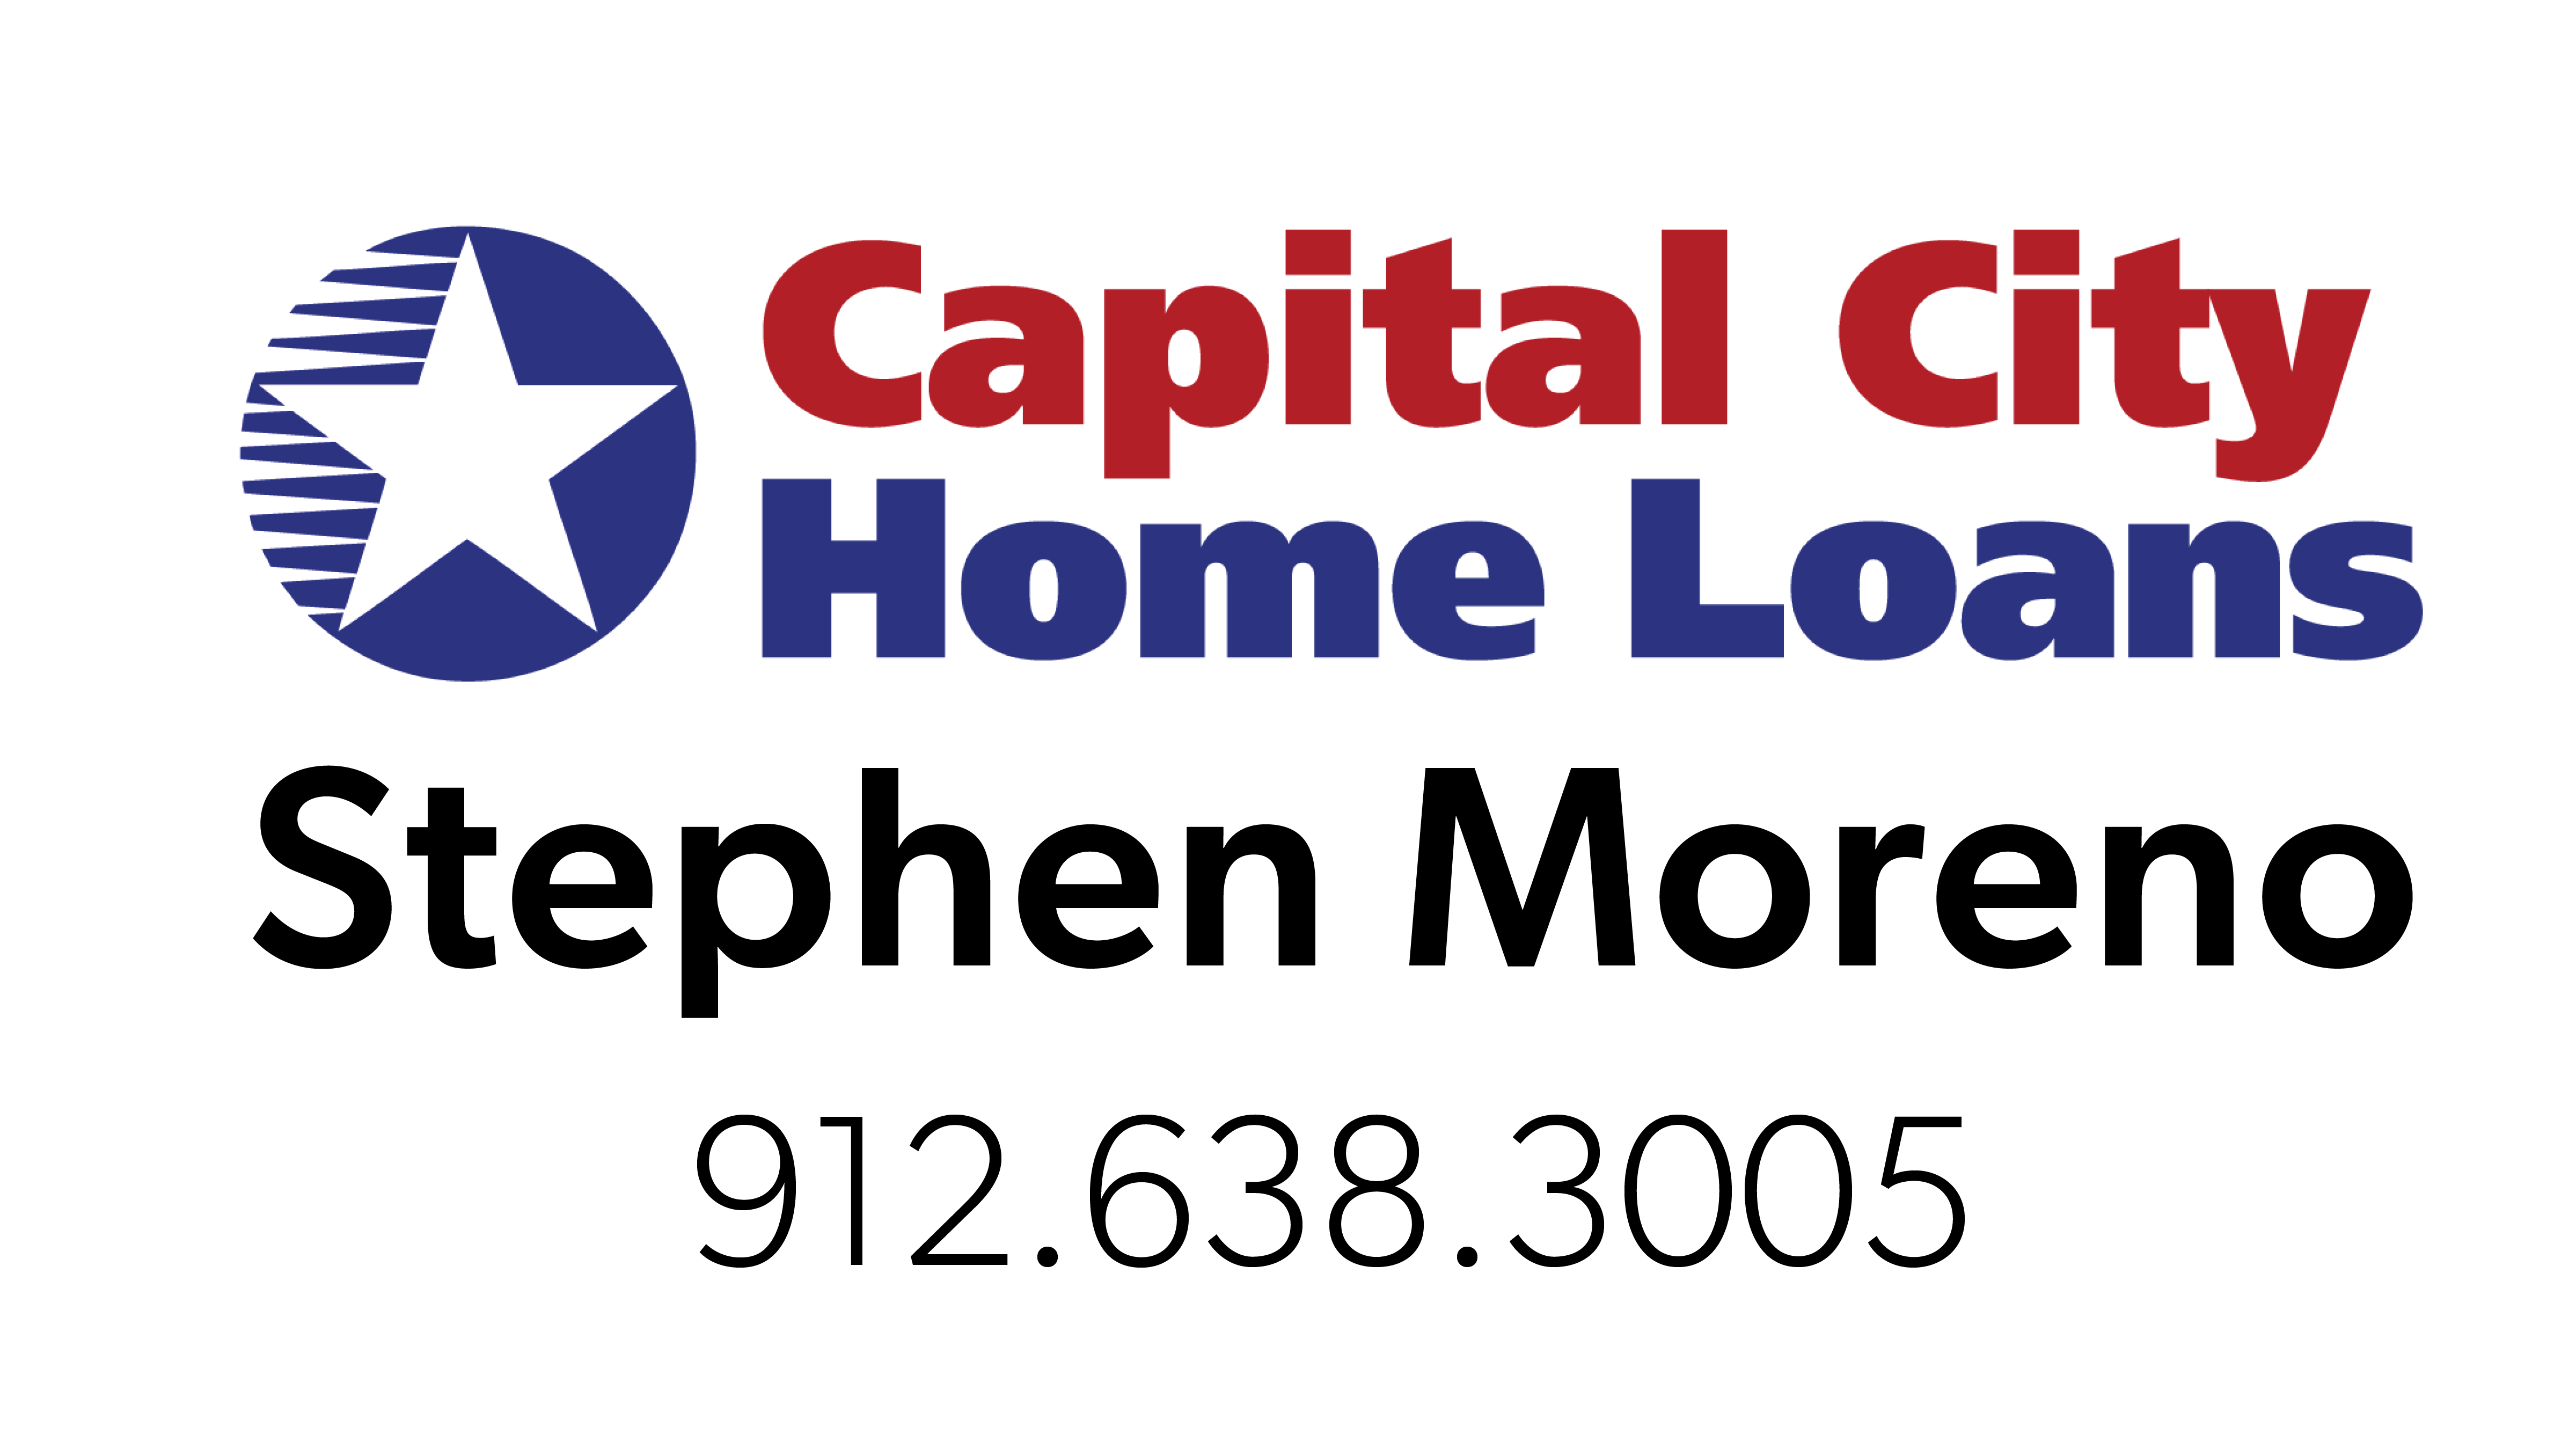 Capital City Home Loans - Stephen Moreno